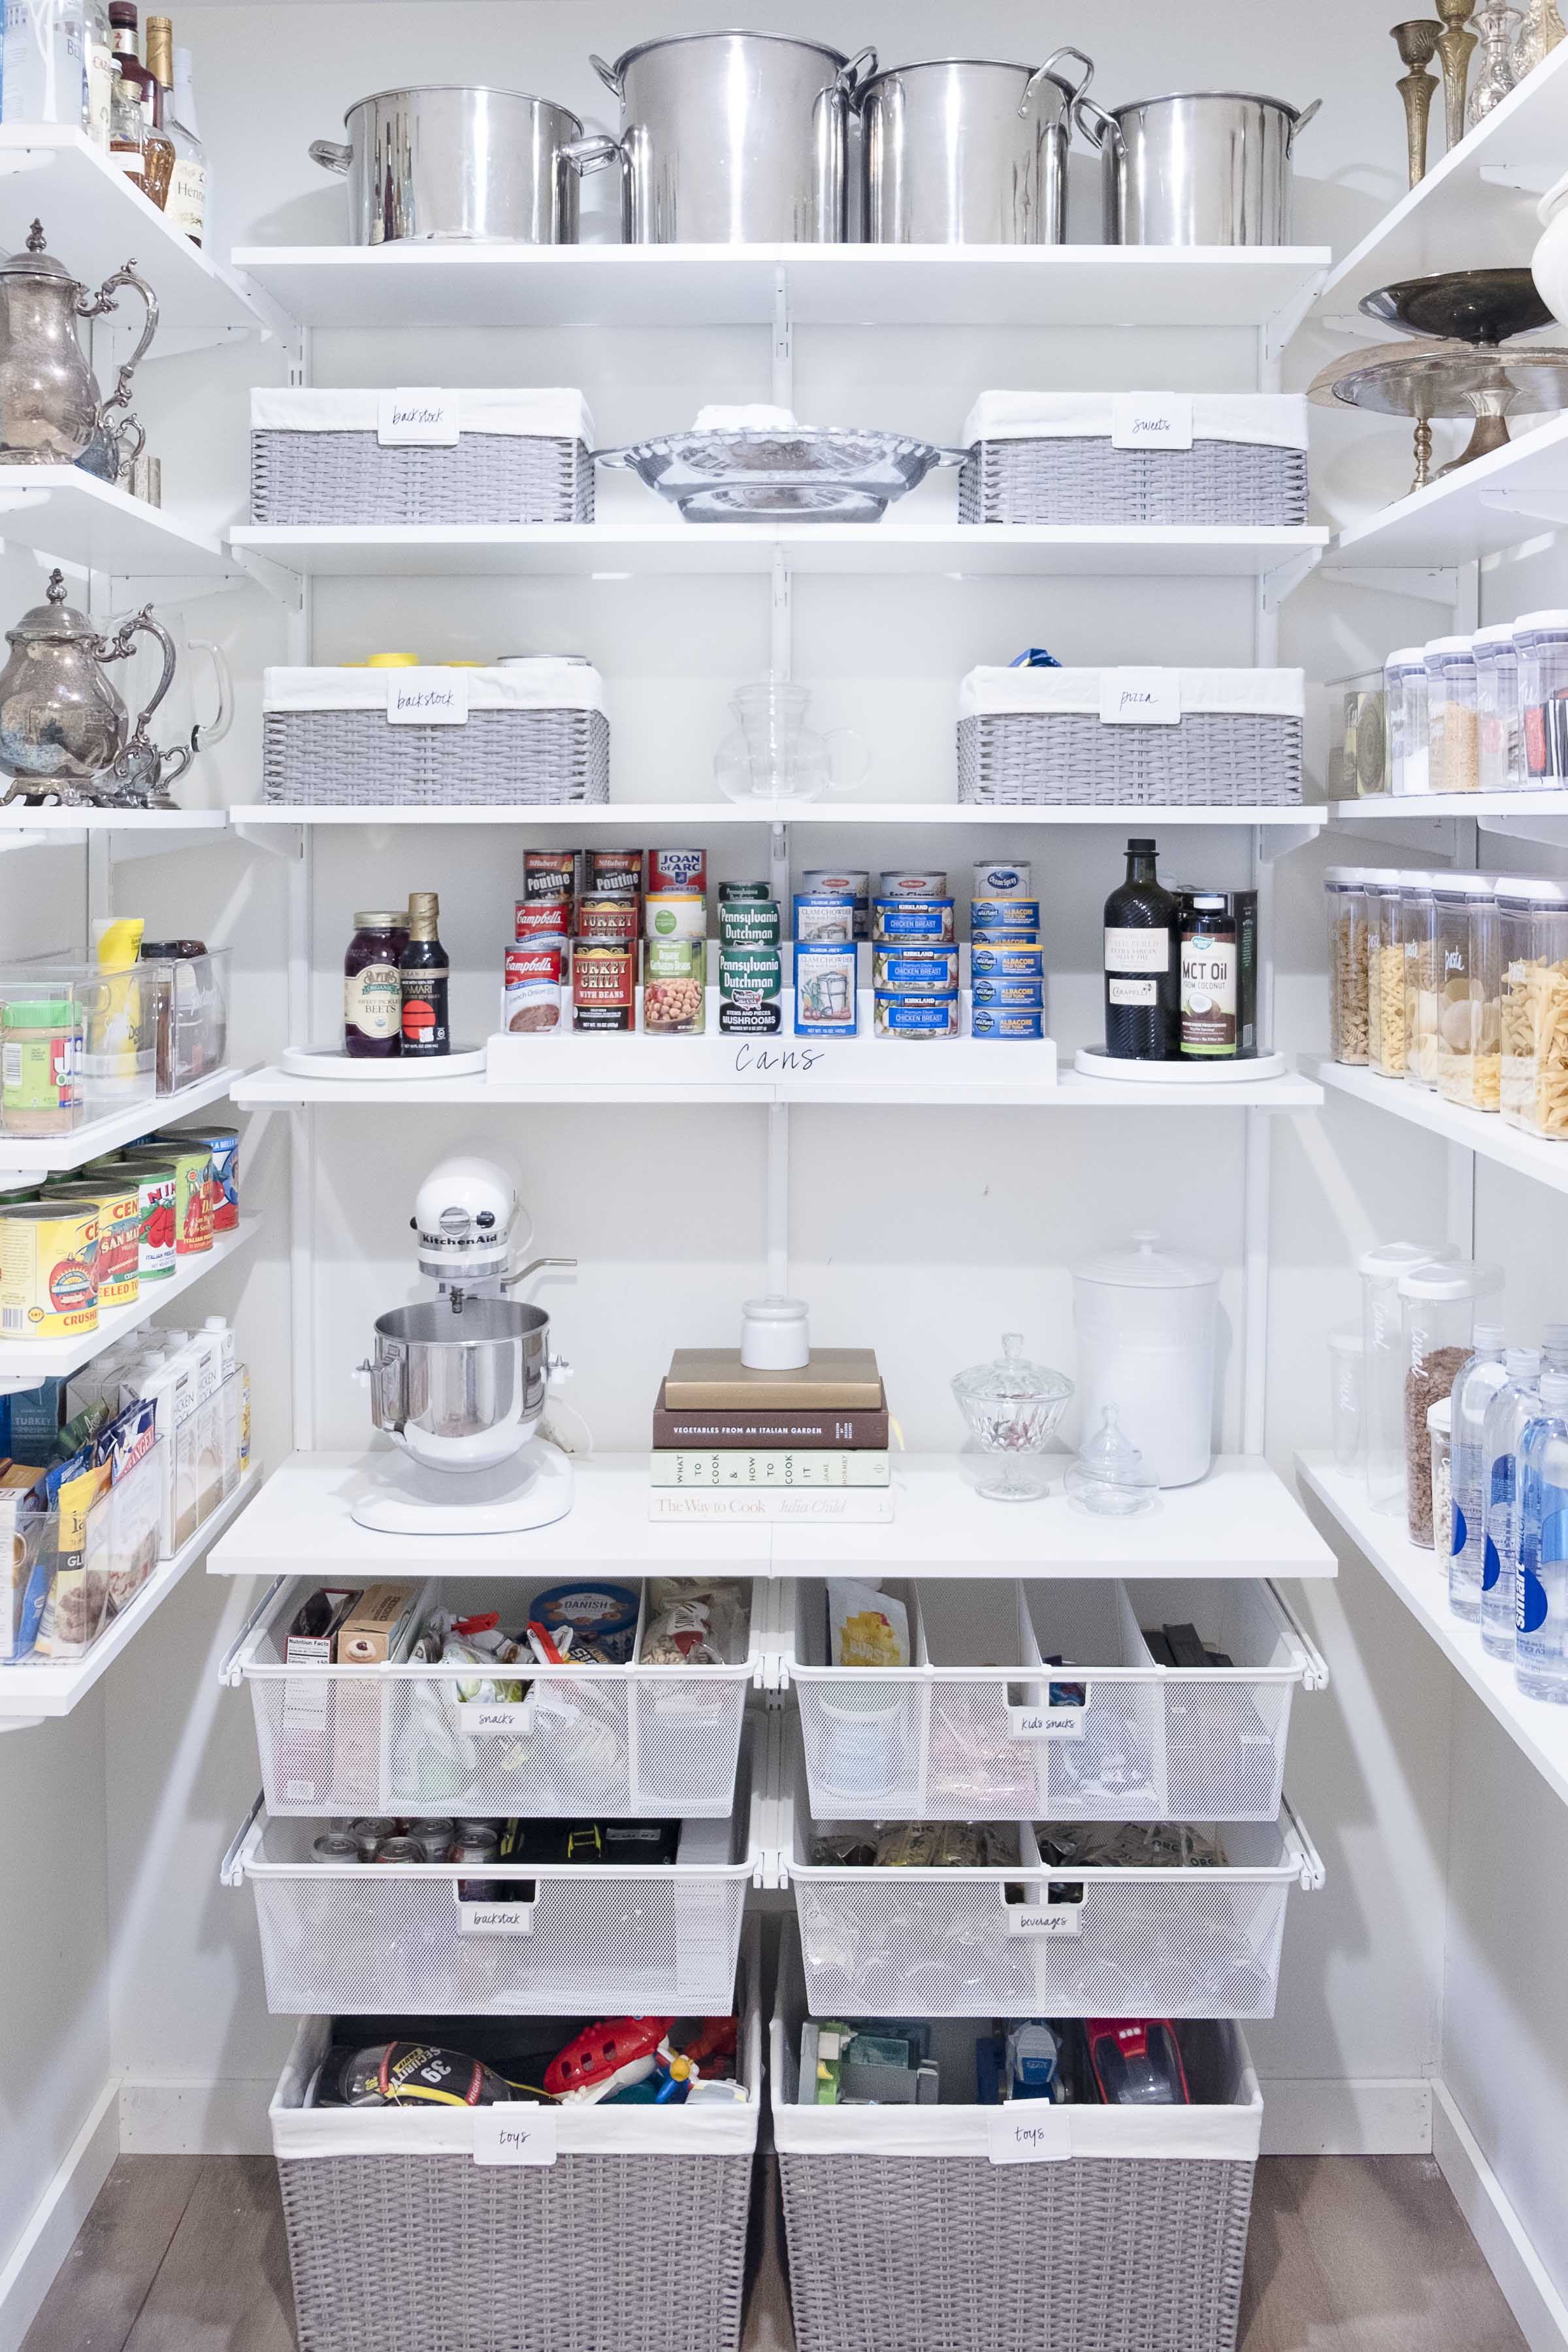 Our Best Small Kitchen Storage Ideas